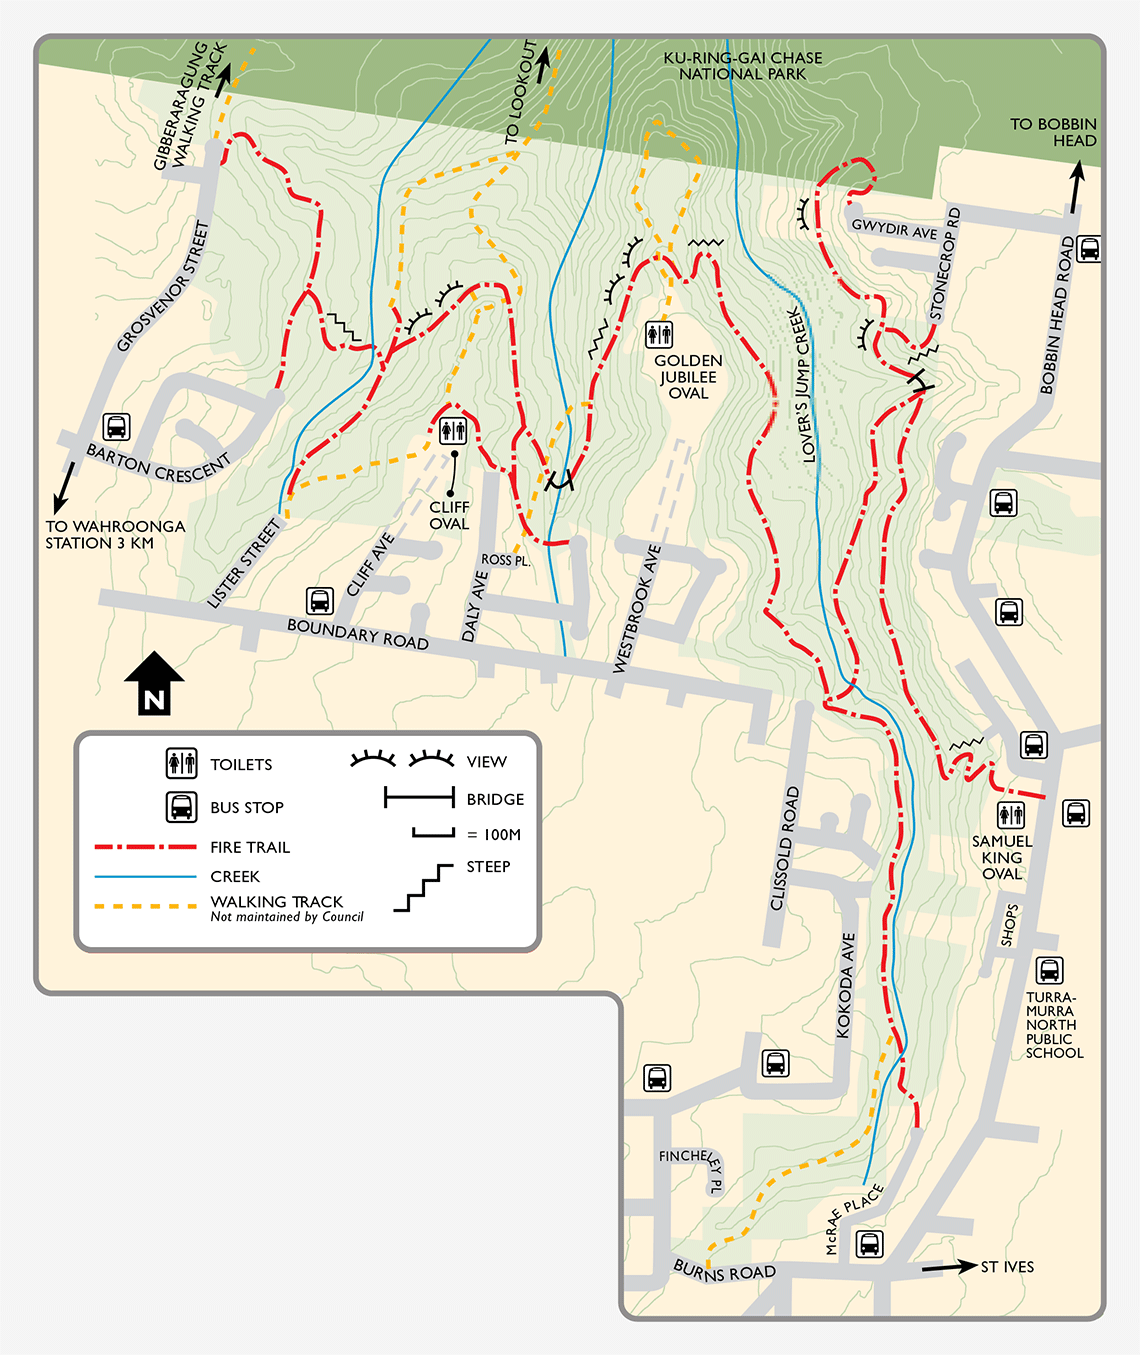 Grosvenor Street to Gwydir Avenue Track map